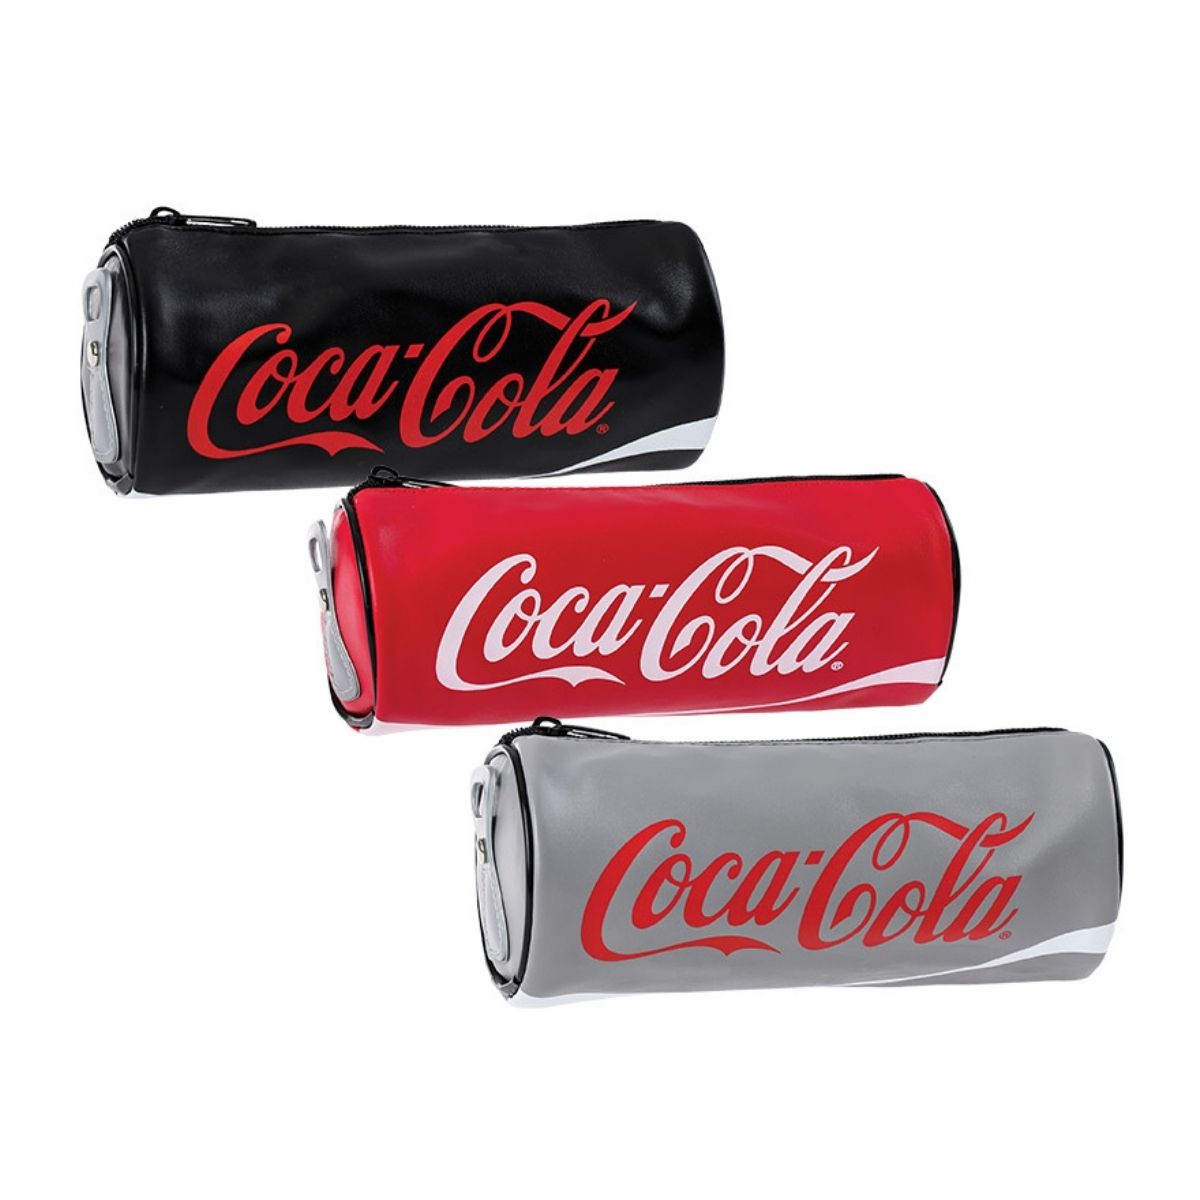 Pernica Cans - Coca Cola 